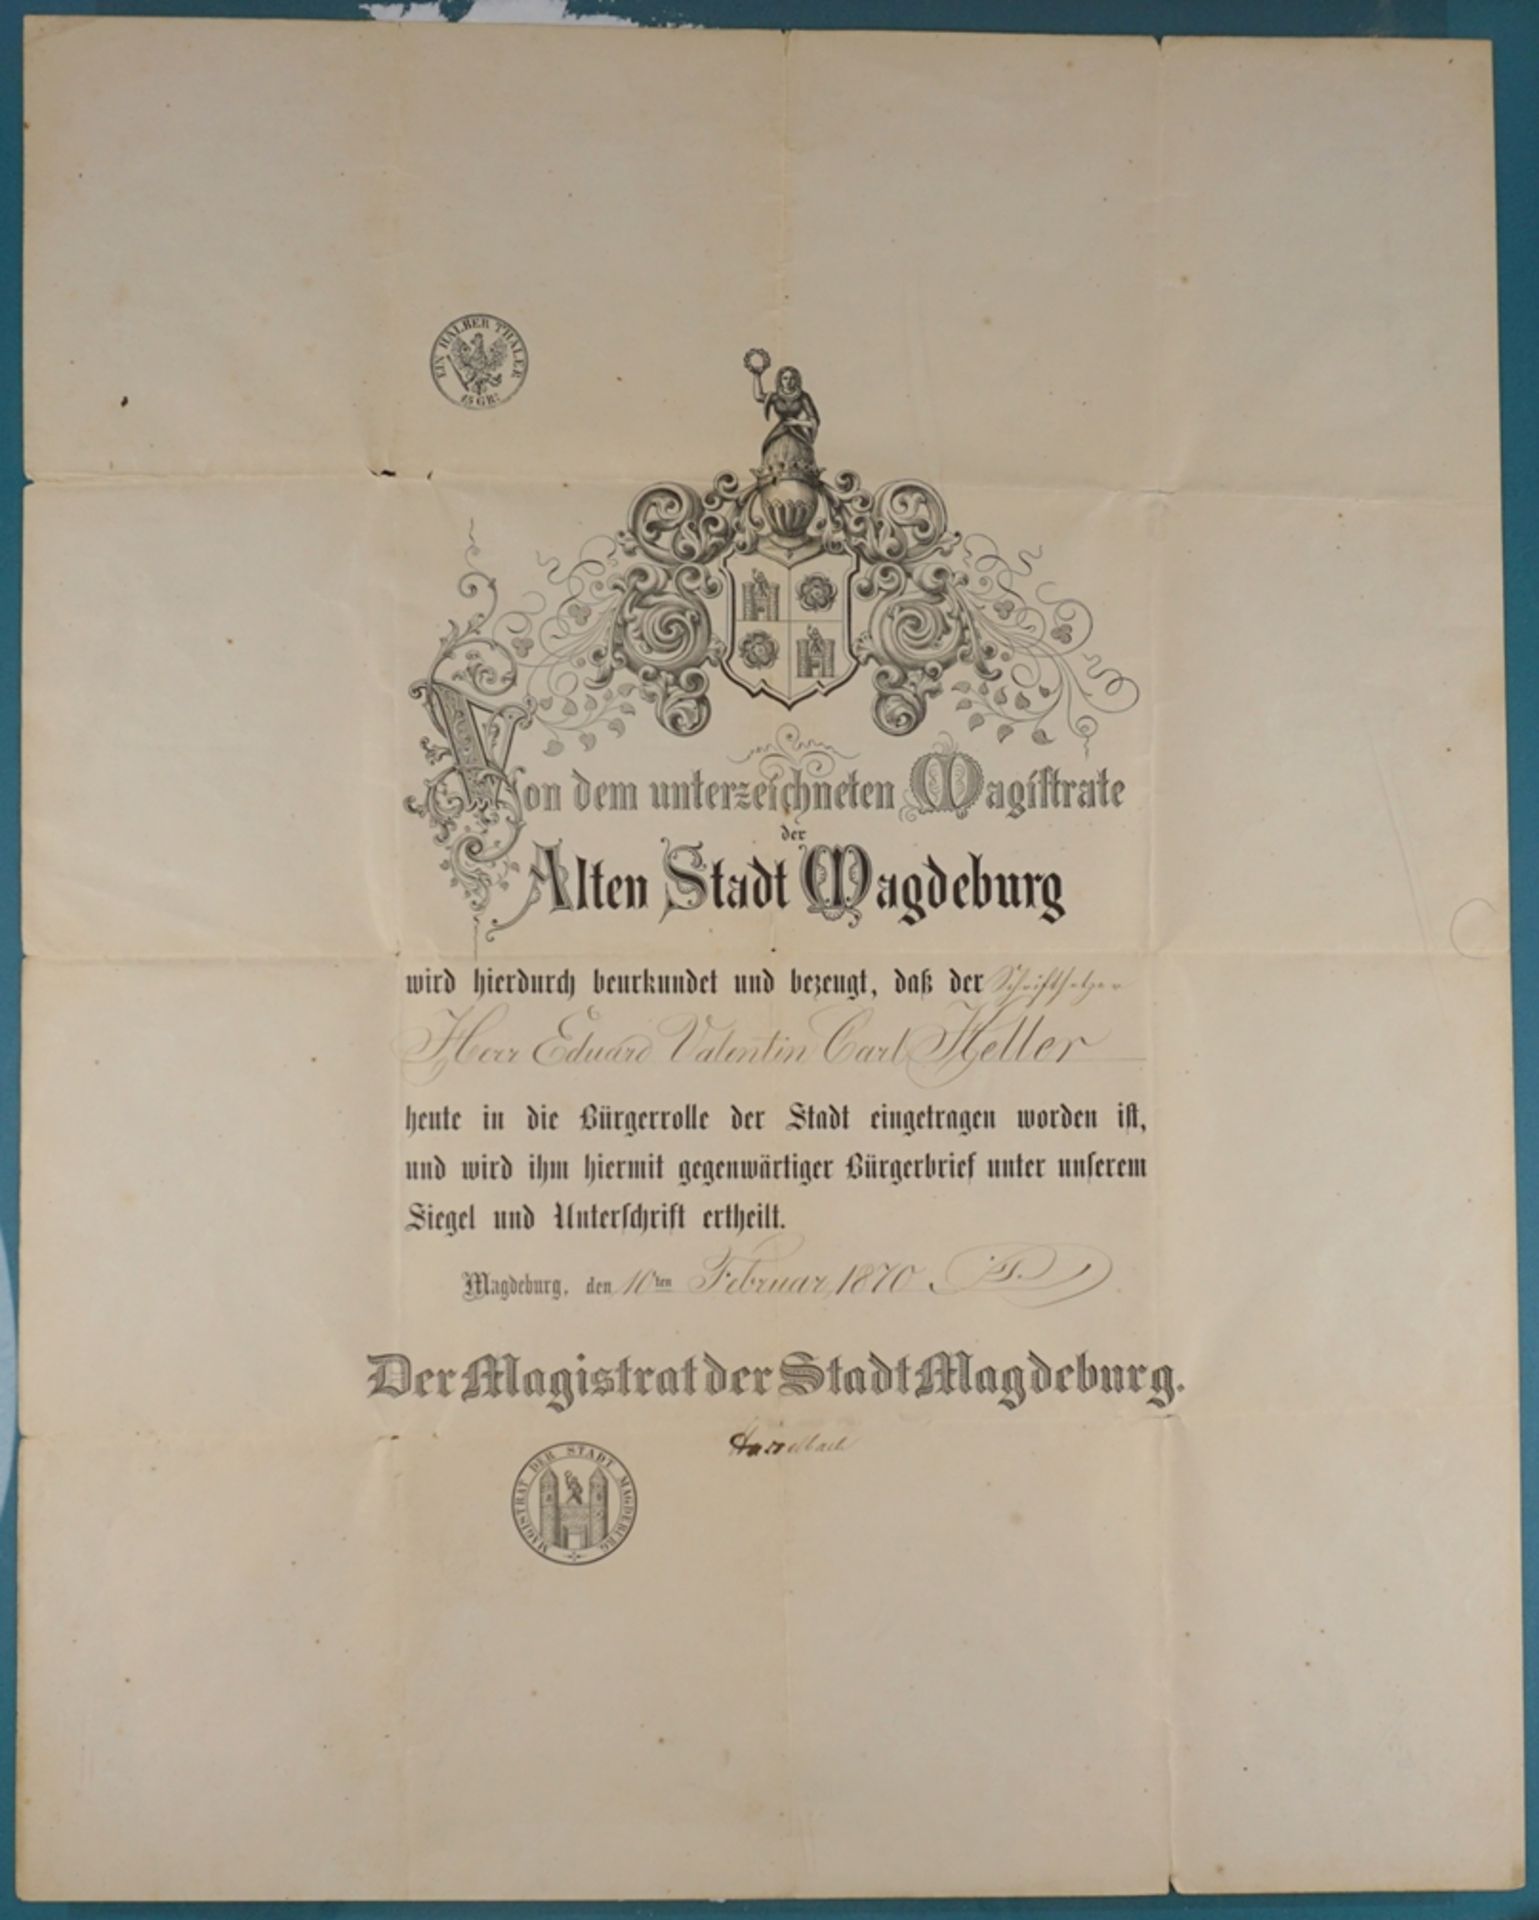 Urkunde vom Magistrat der Stadt Magdeburg zum Eintrag in die Bürgerrolle, mit Original-Unterschrift